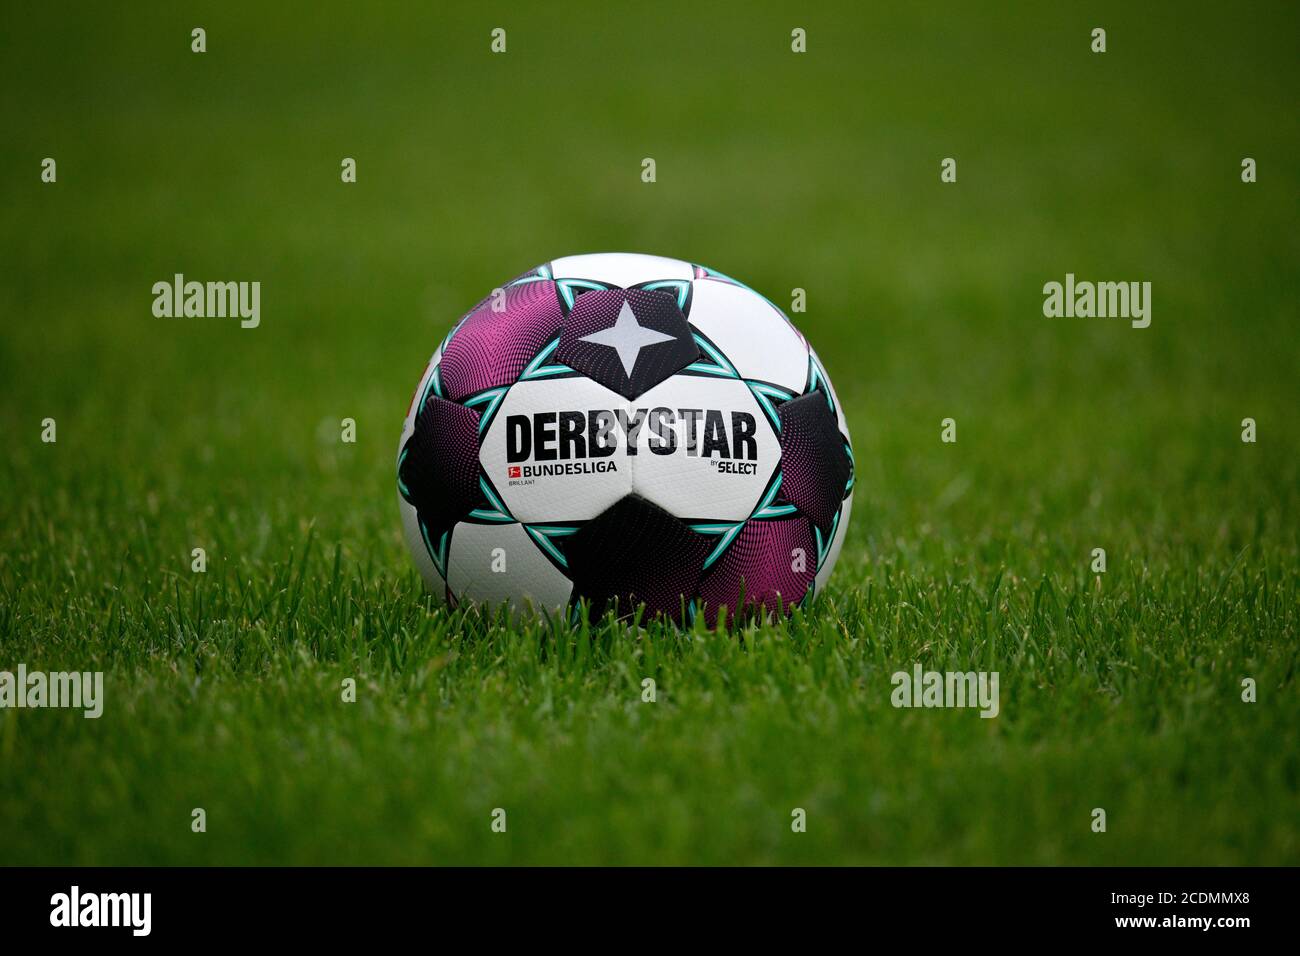 Adidas Derby estrella Brillant APS 20/21, partido de pelota de la temporada  2020/2021 Bundesliga en color turquesa y púrpura, se encuentra en el  césped, Alemania Fotografía de stock - Alamy